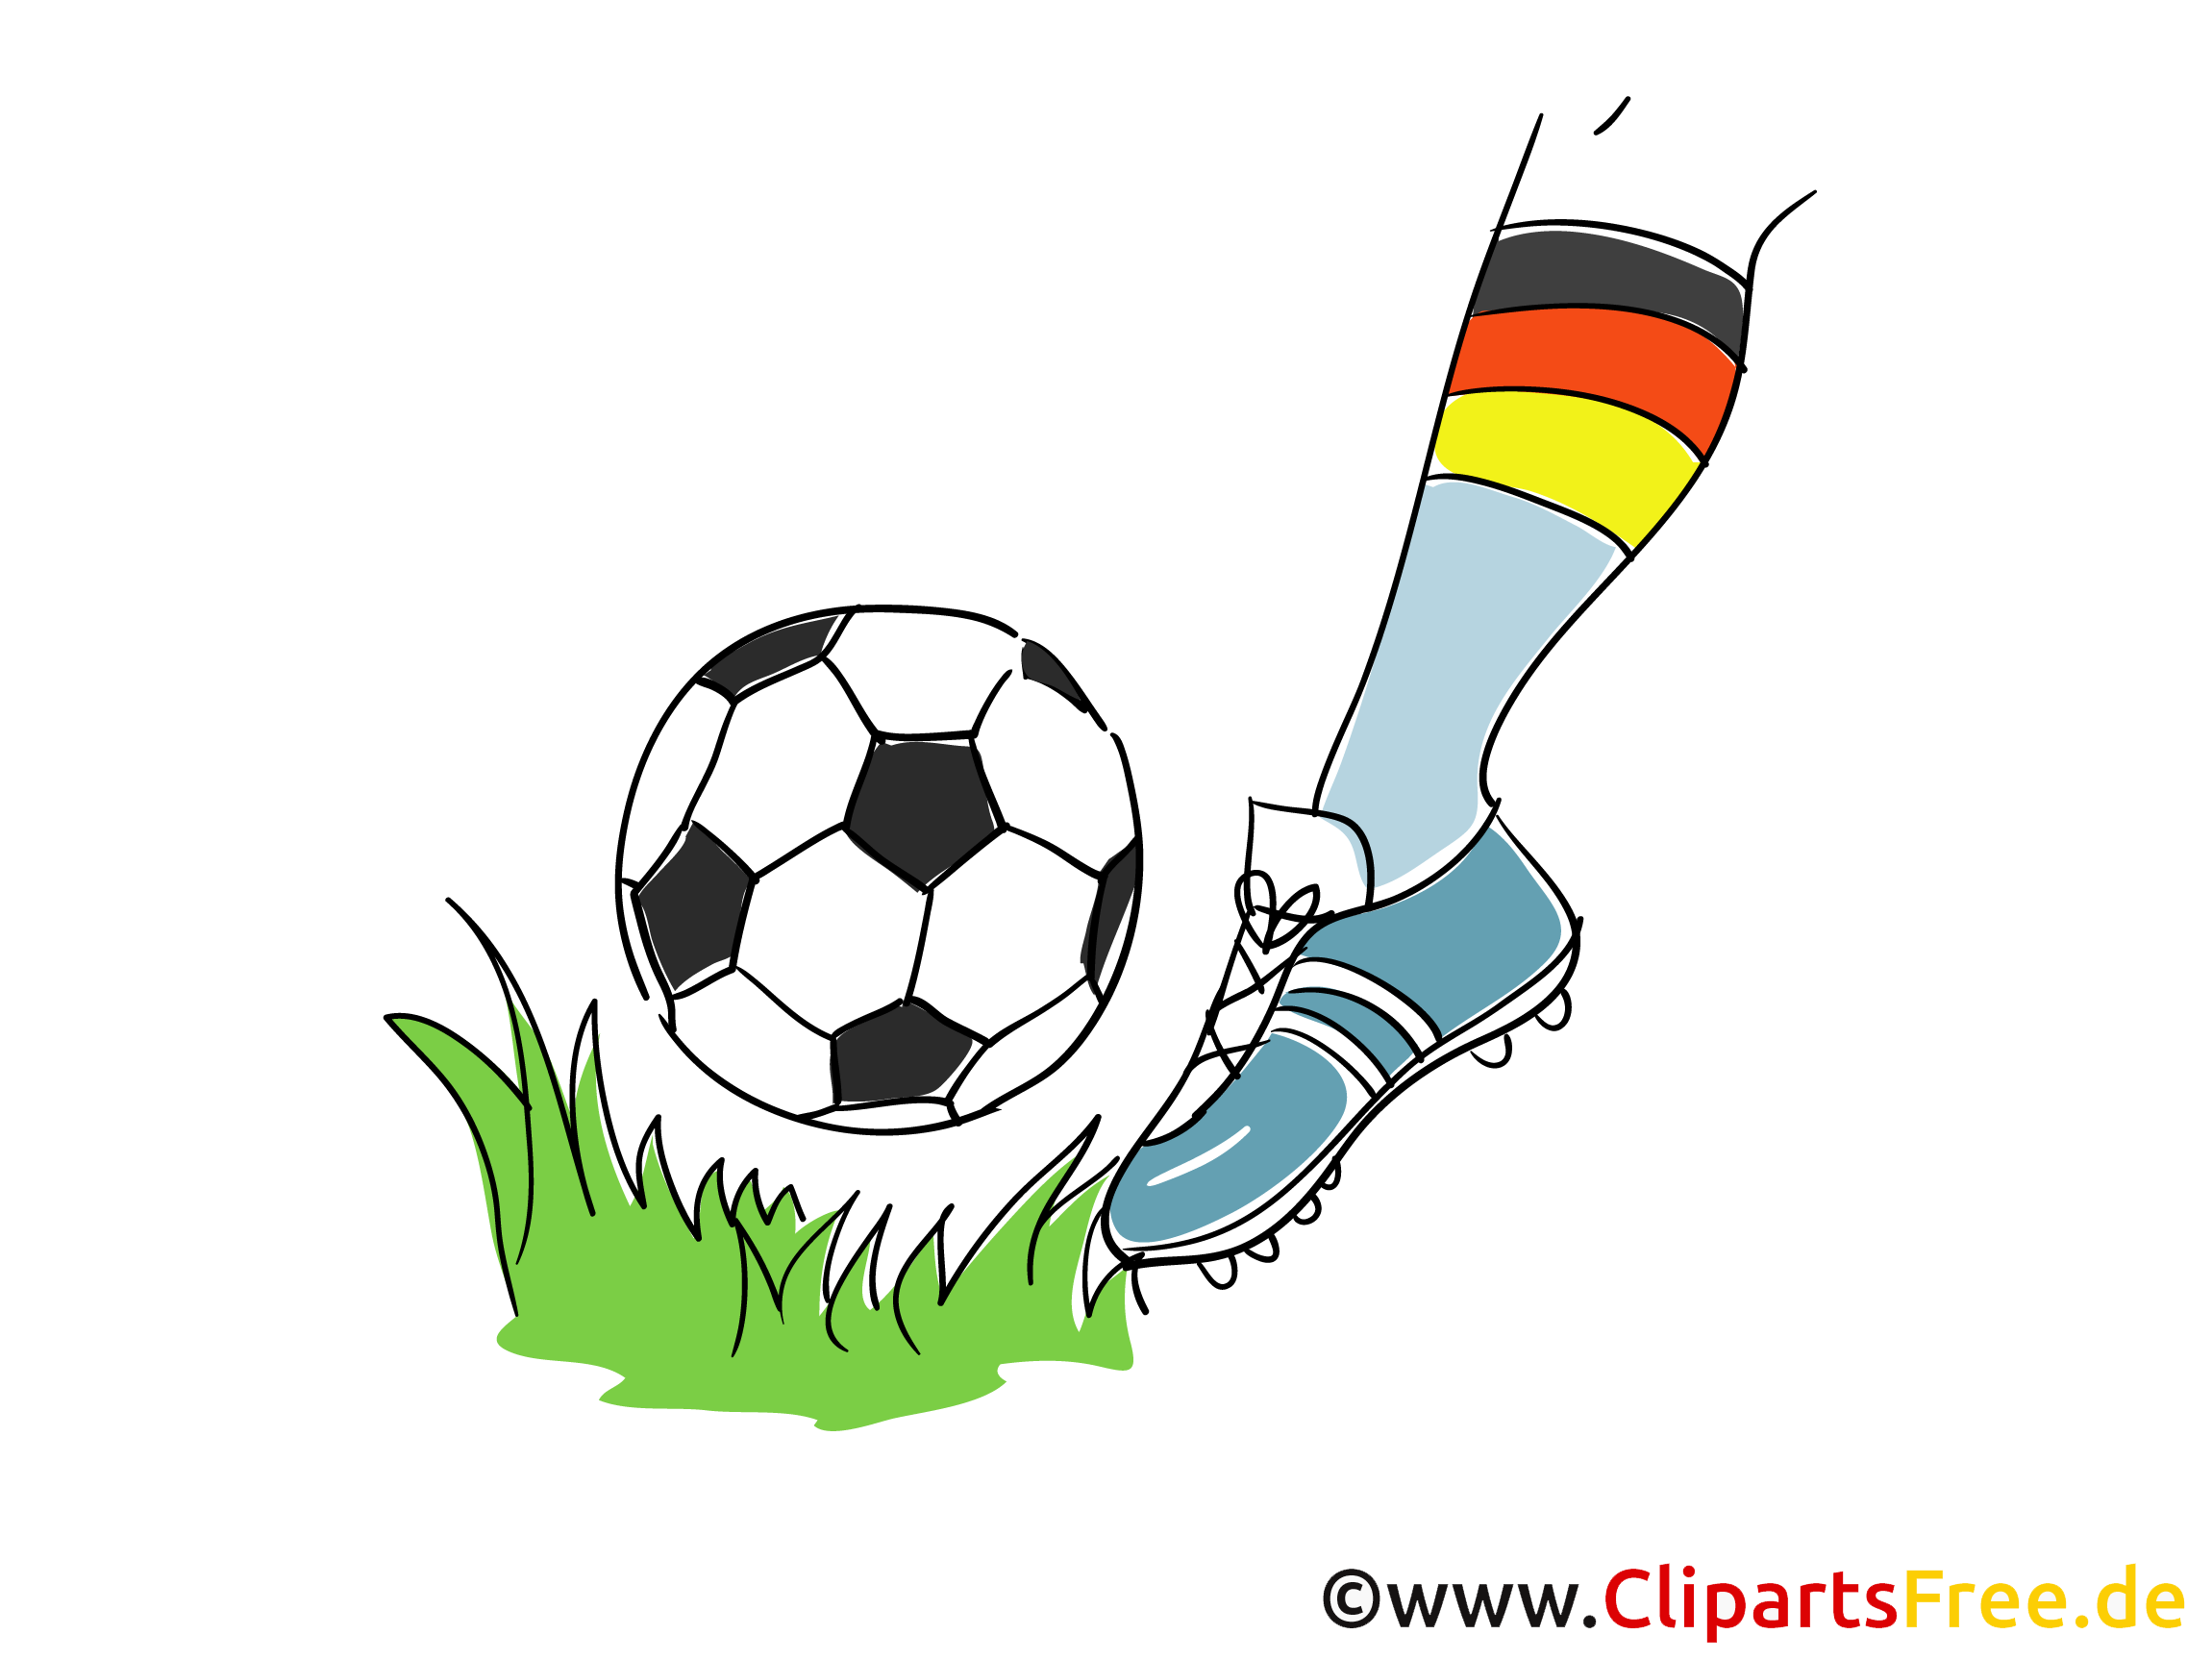 clipart fußball kostenlos download - photo #19